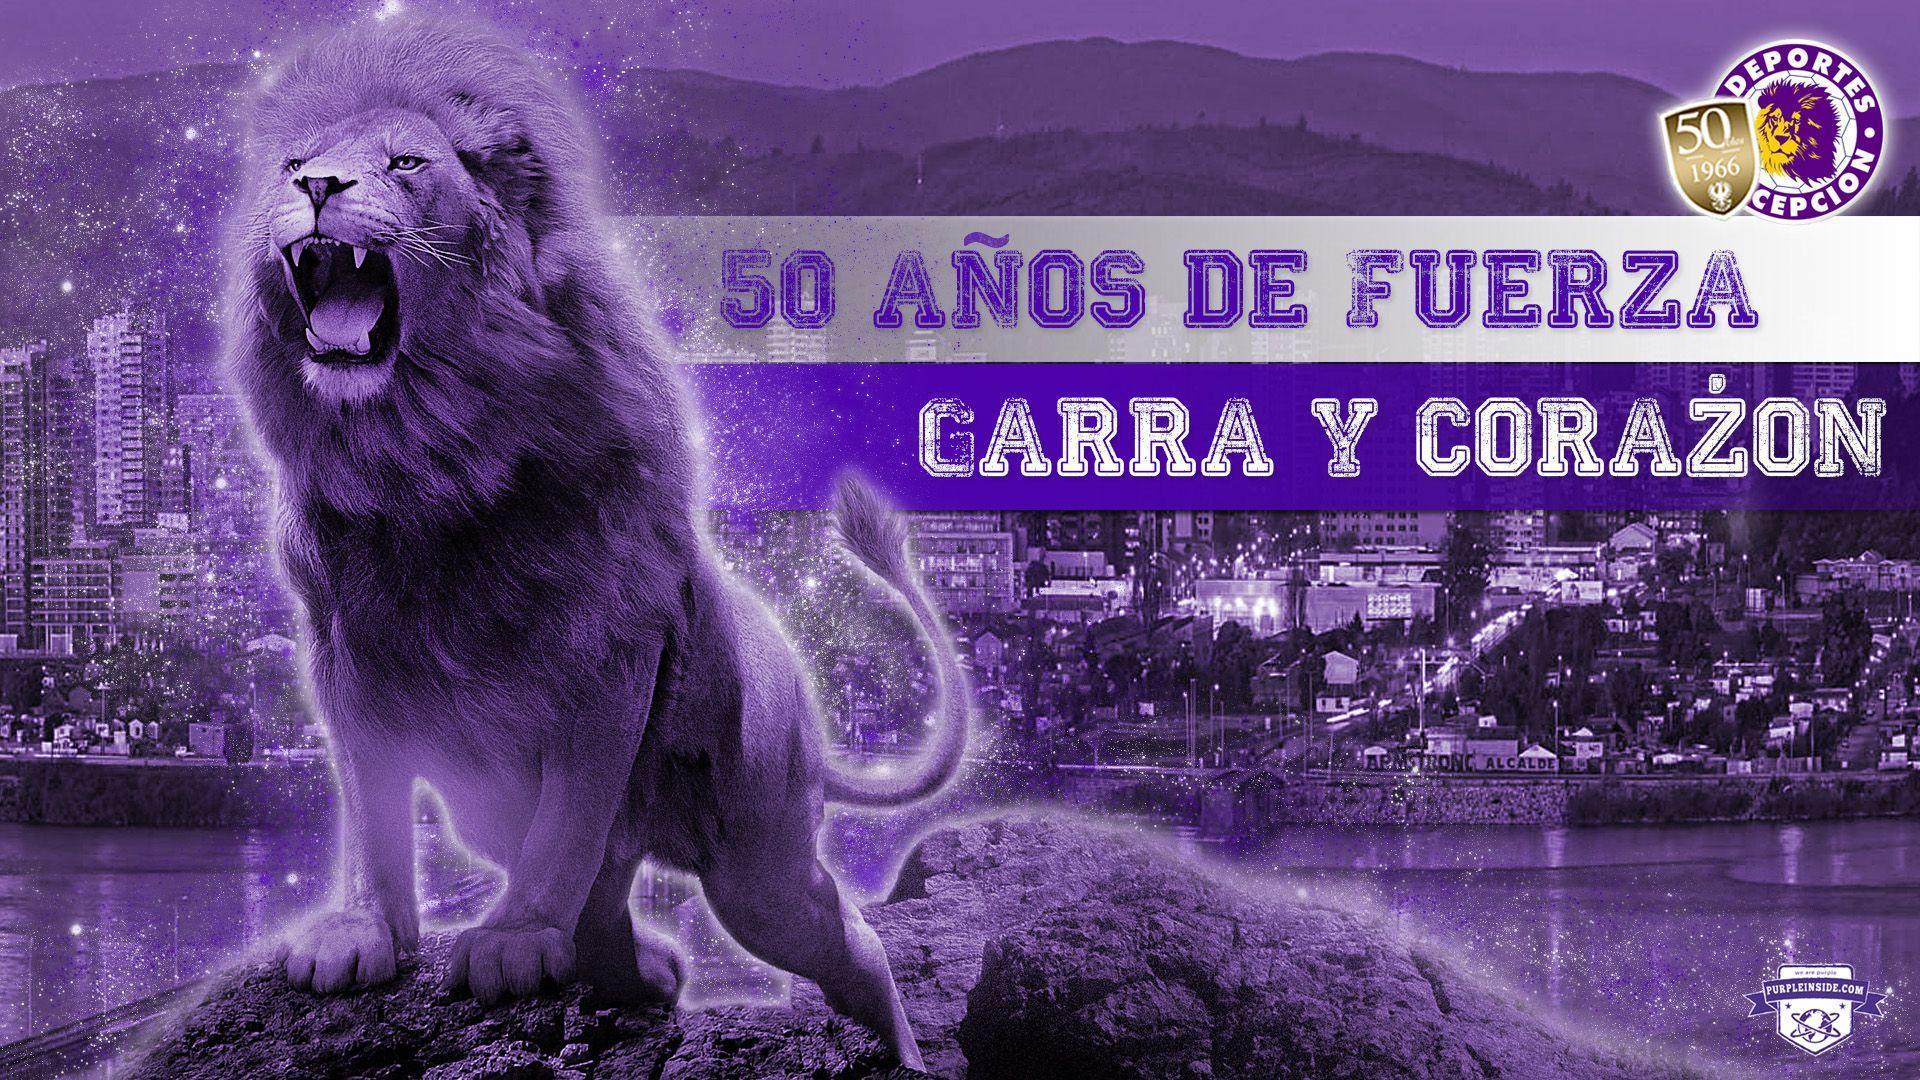 Deportes Concepción to Purple Inside!